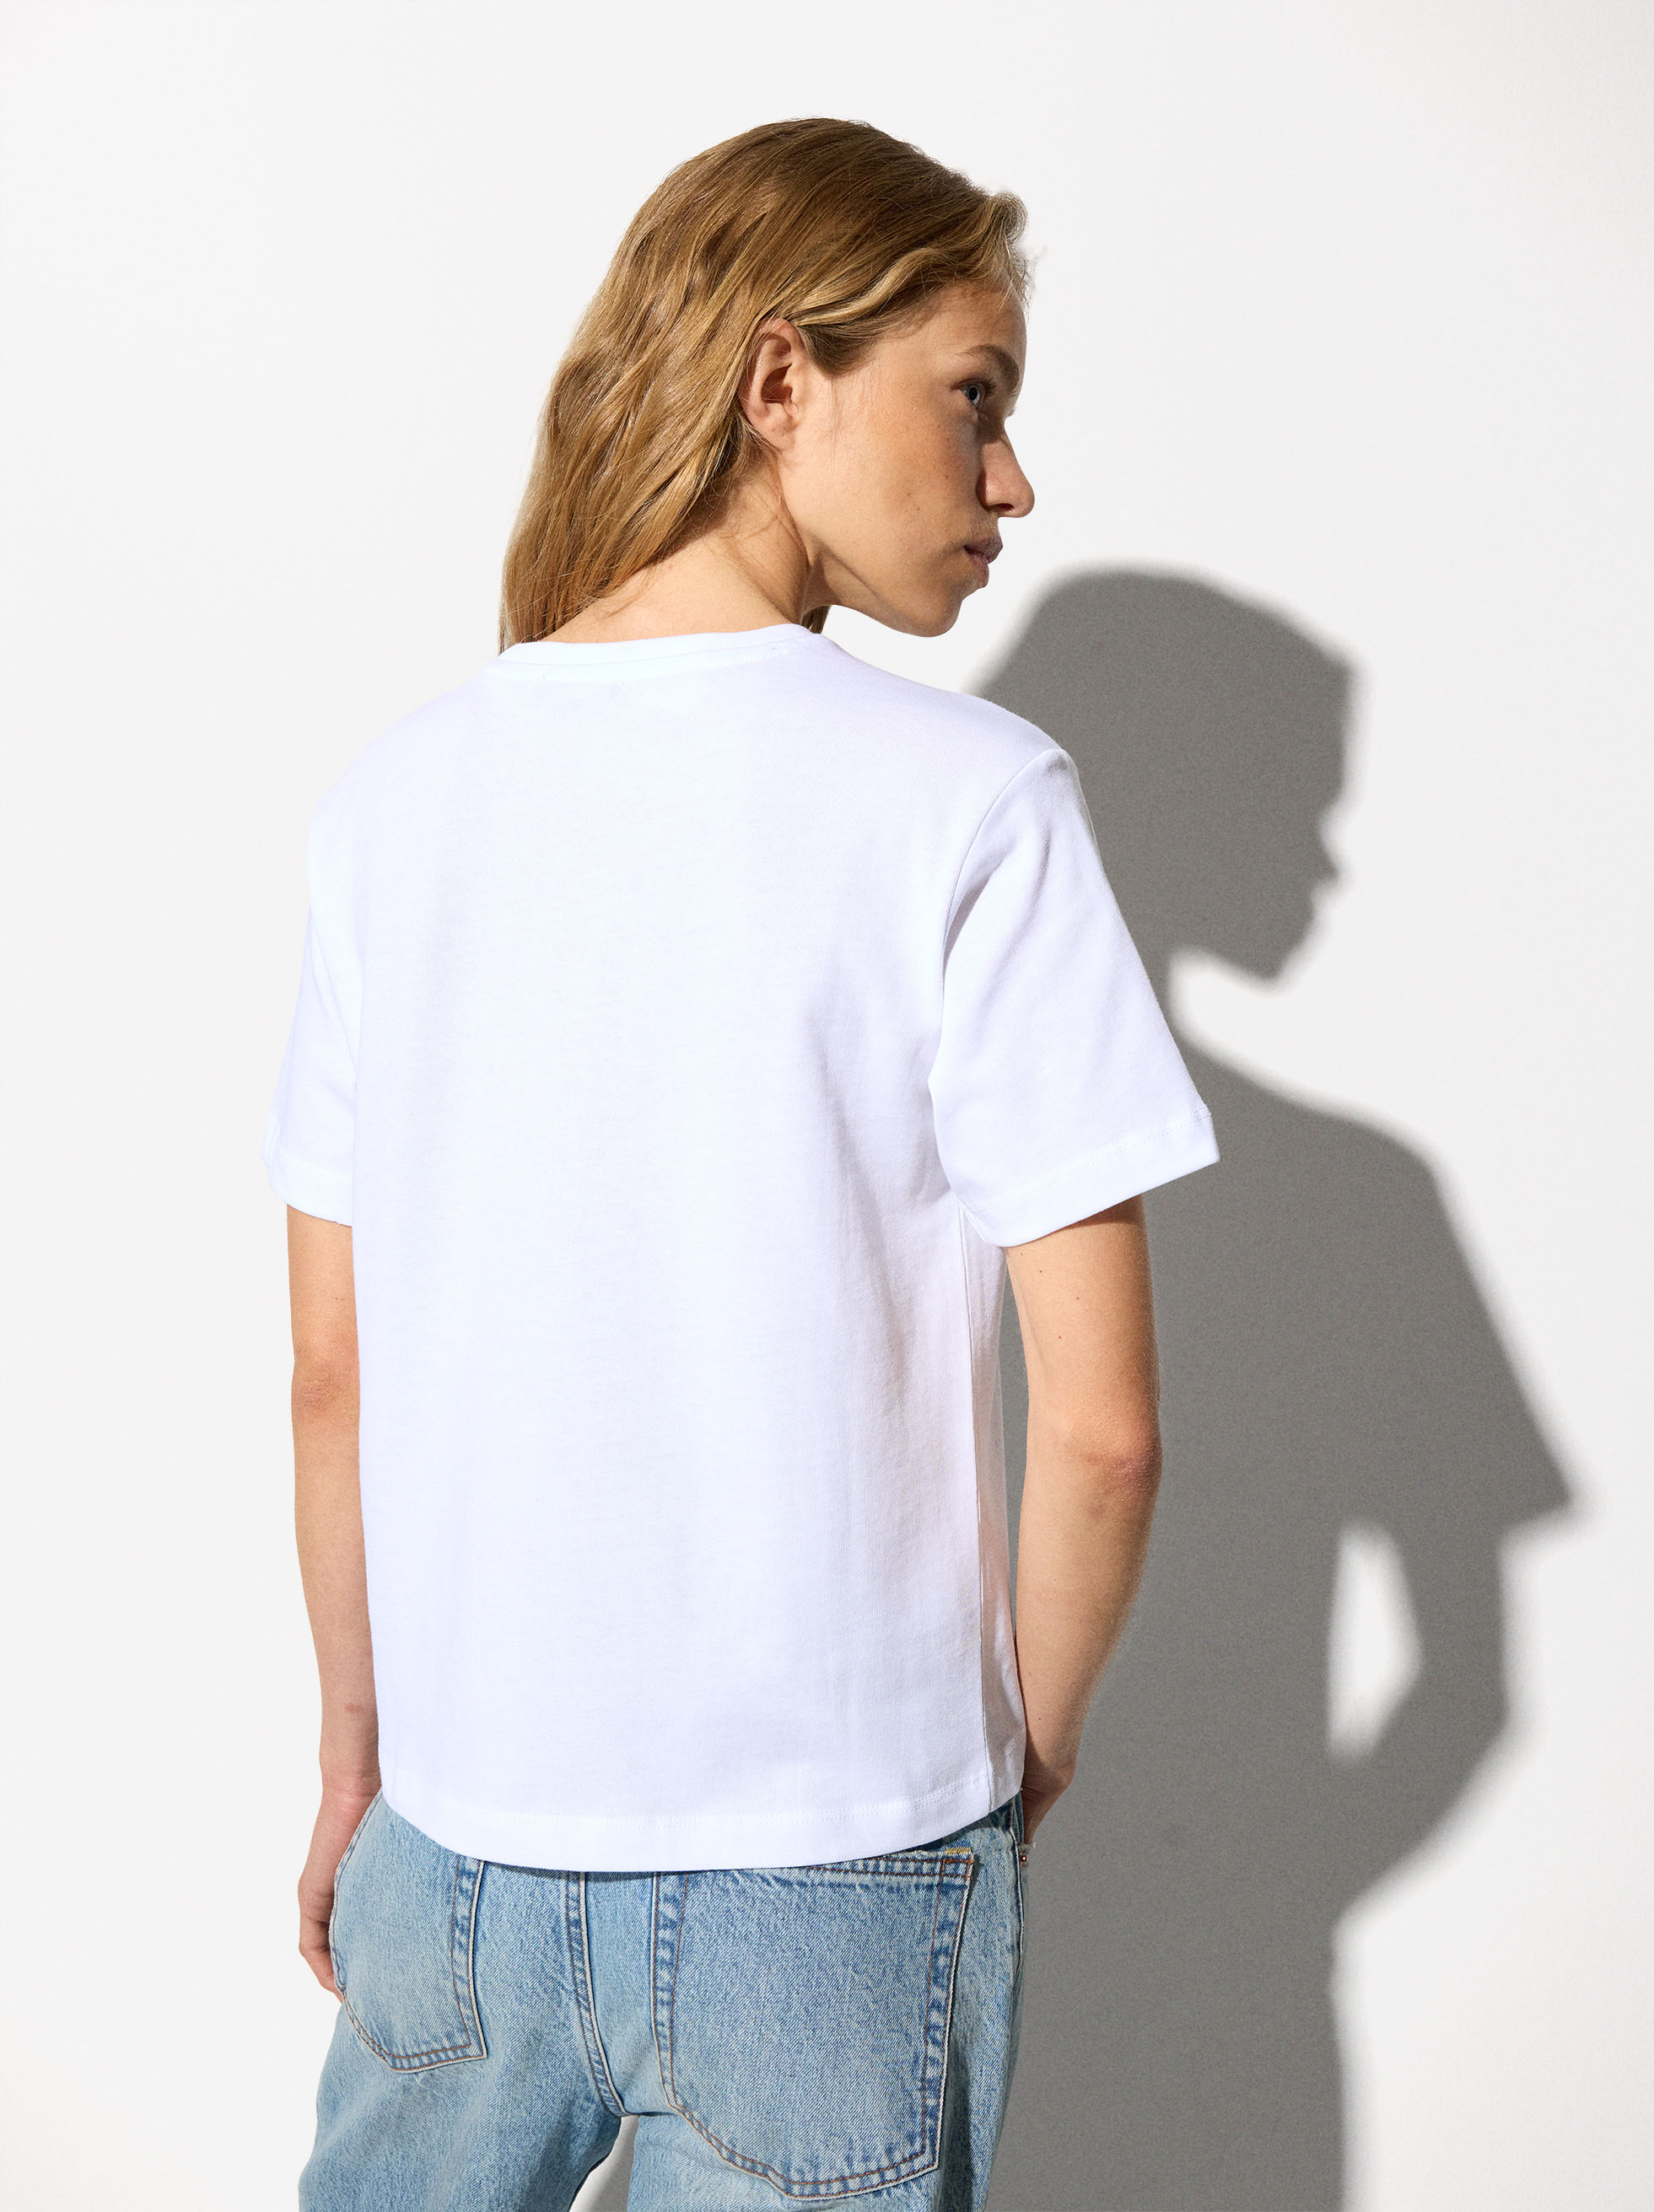 T-Shirt Imprimé 100% Coton - Online Exclusive image number 3.0